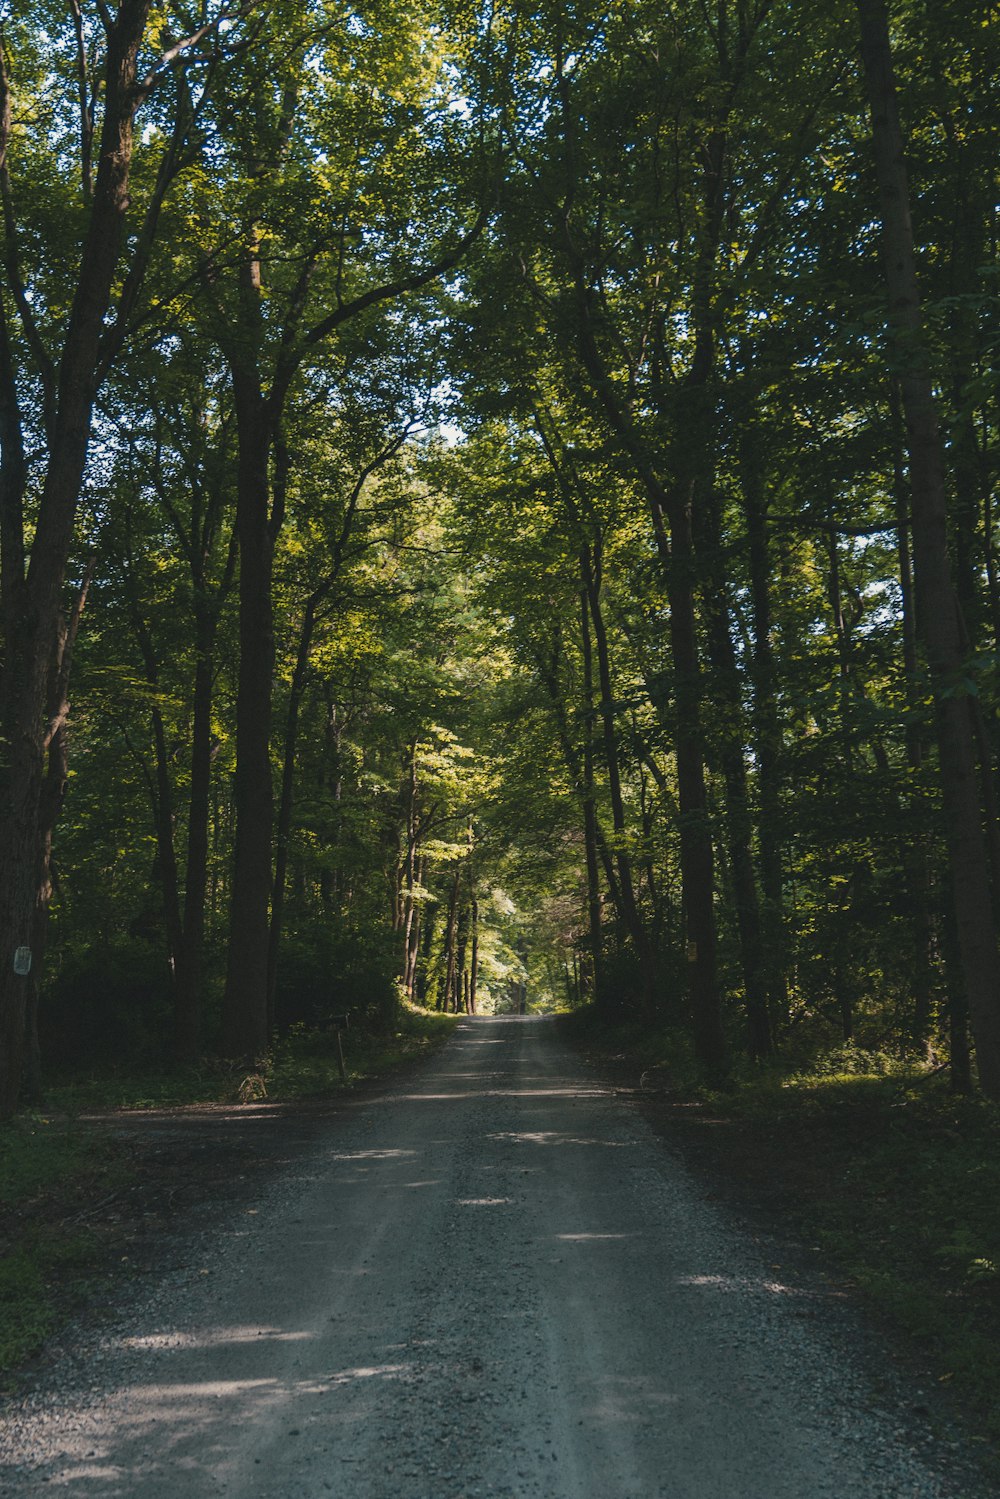 foto da estrada cercada por árvores durante o dia;